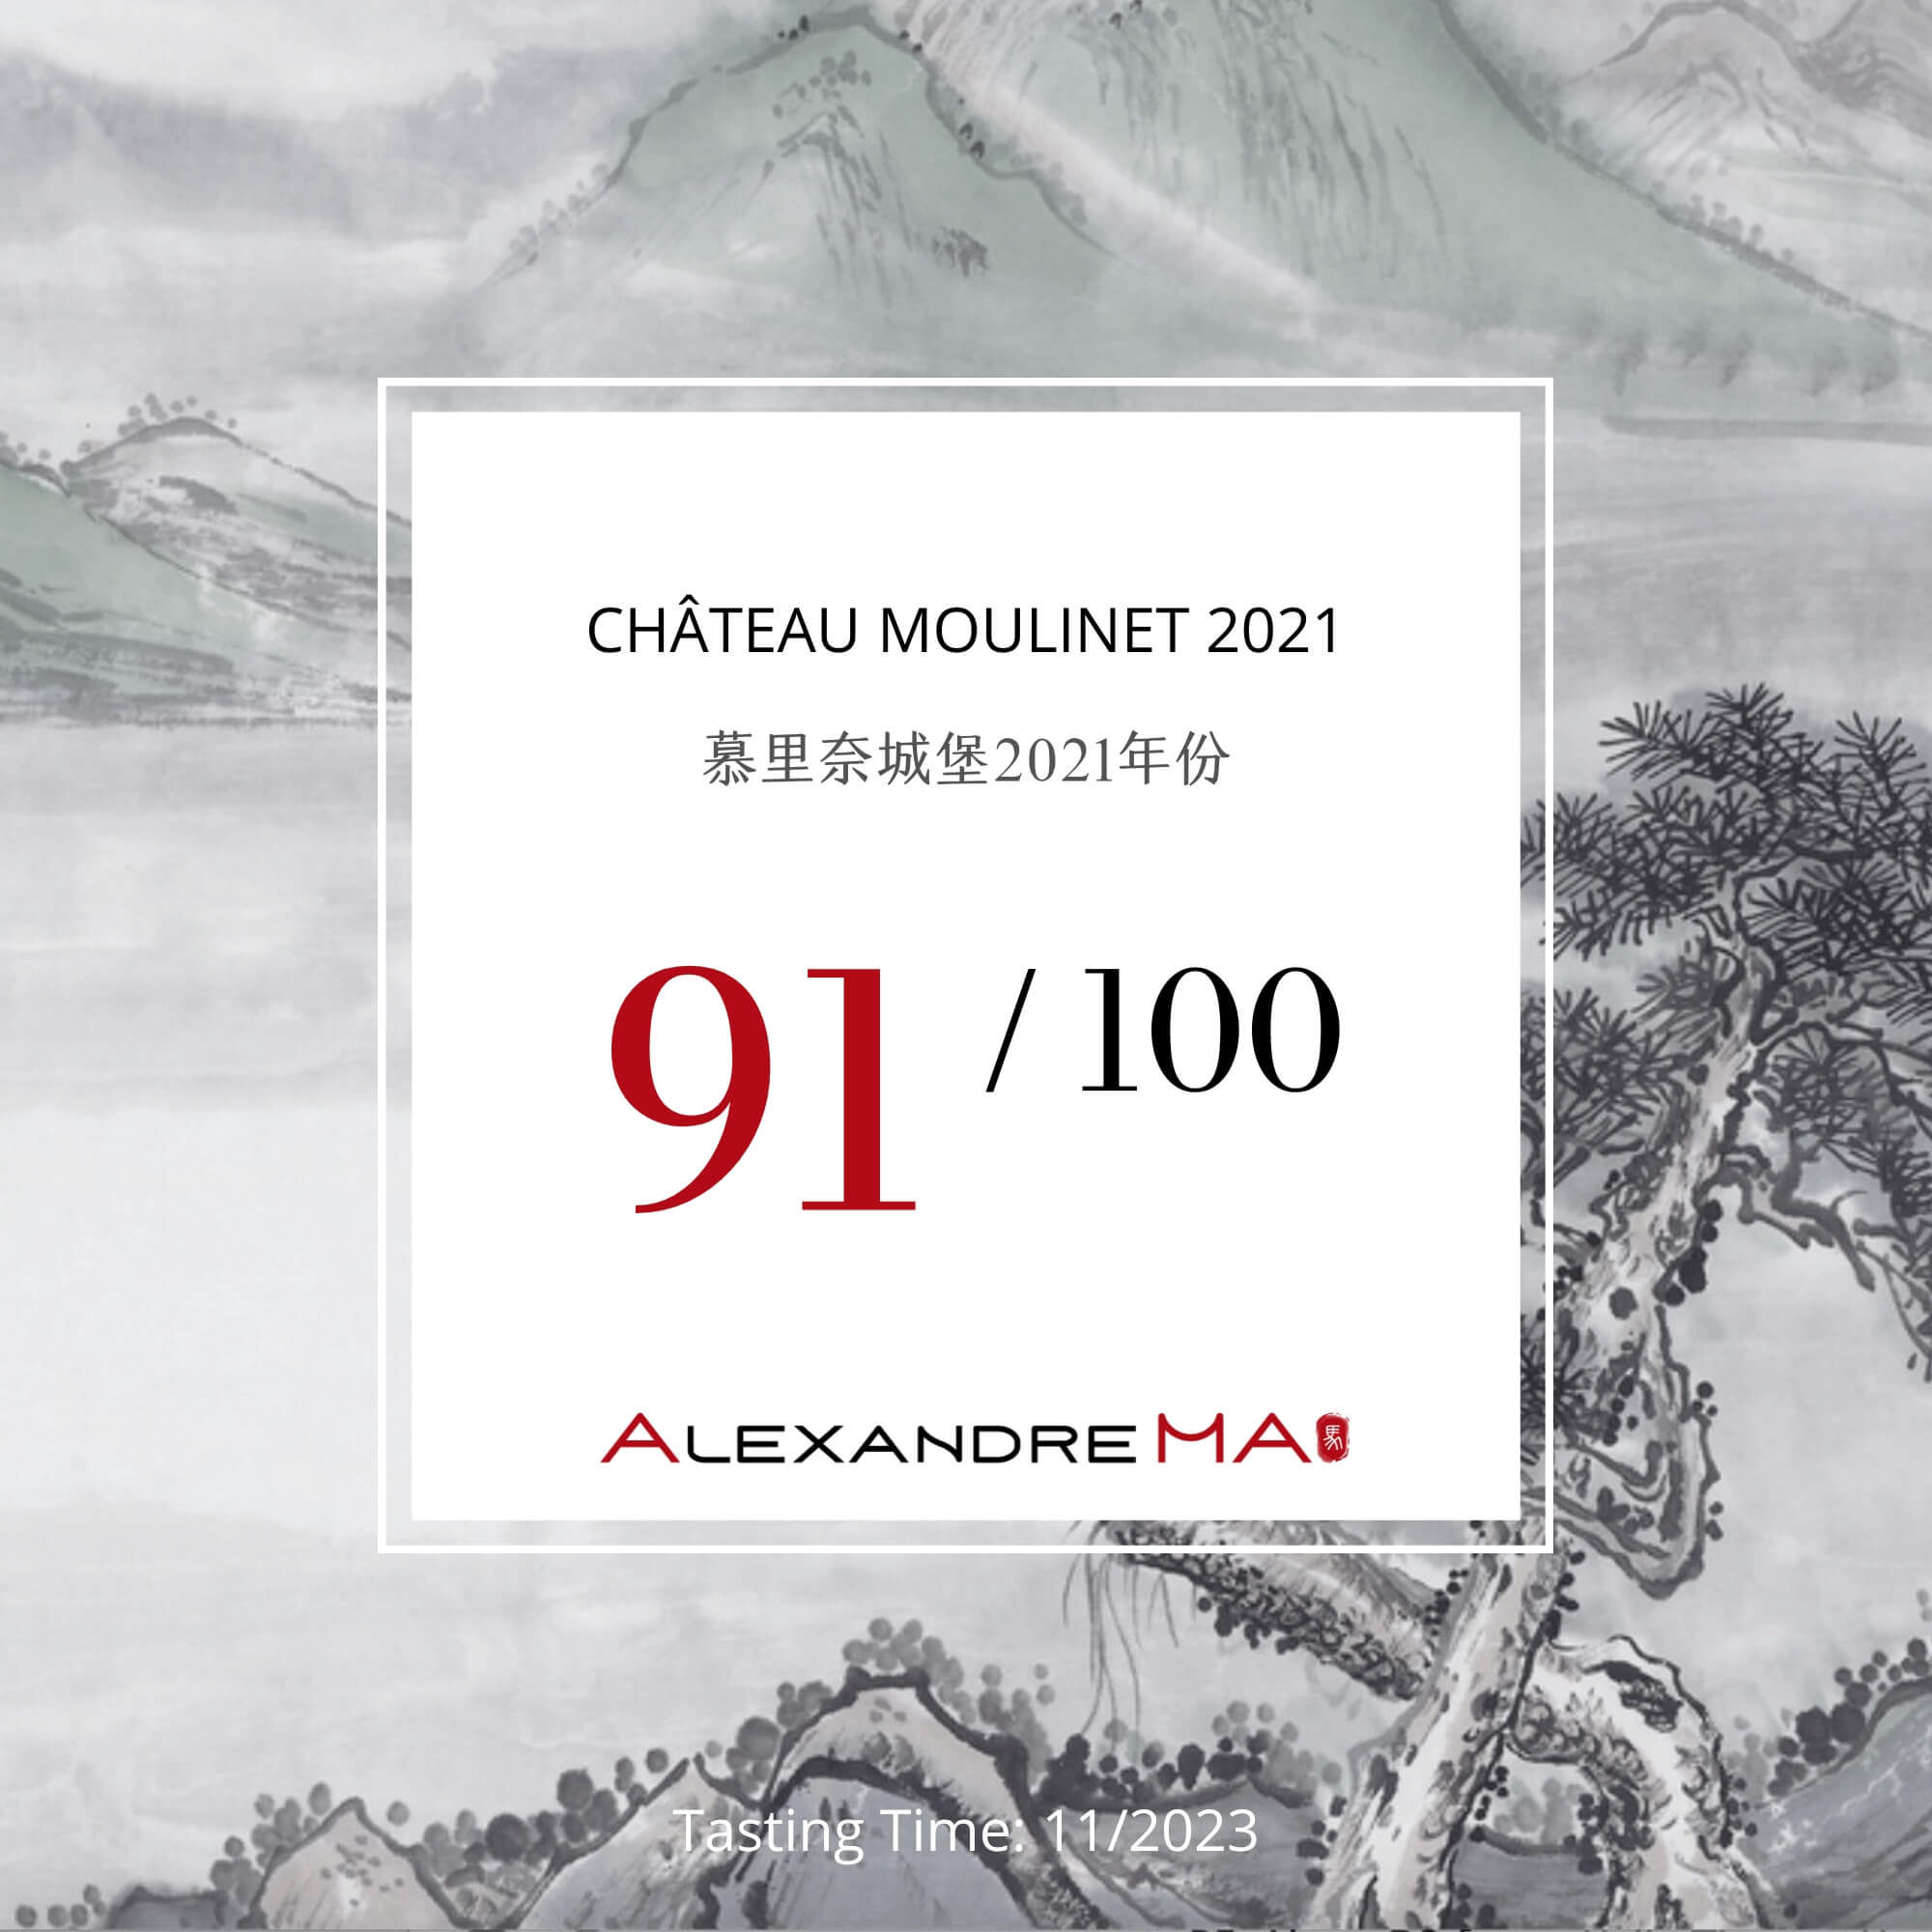 Château Moulinet 2021 - Alexandre MA